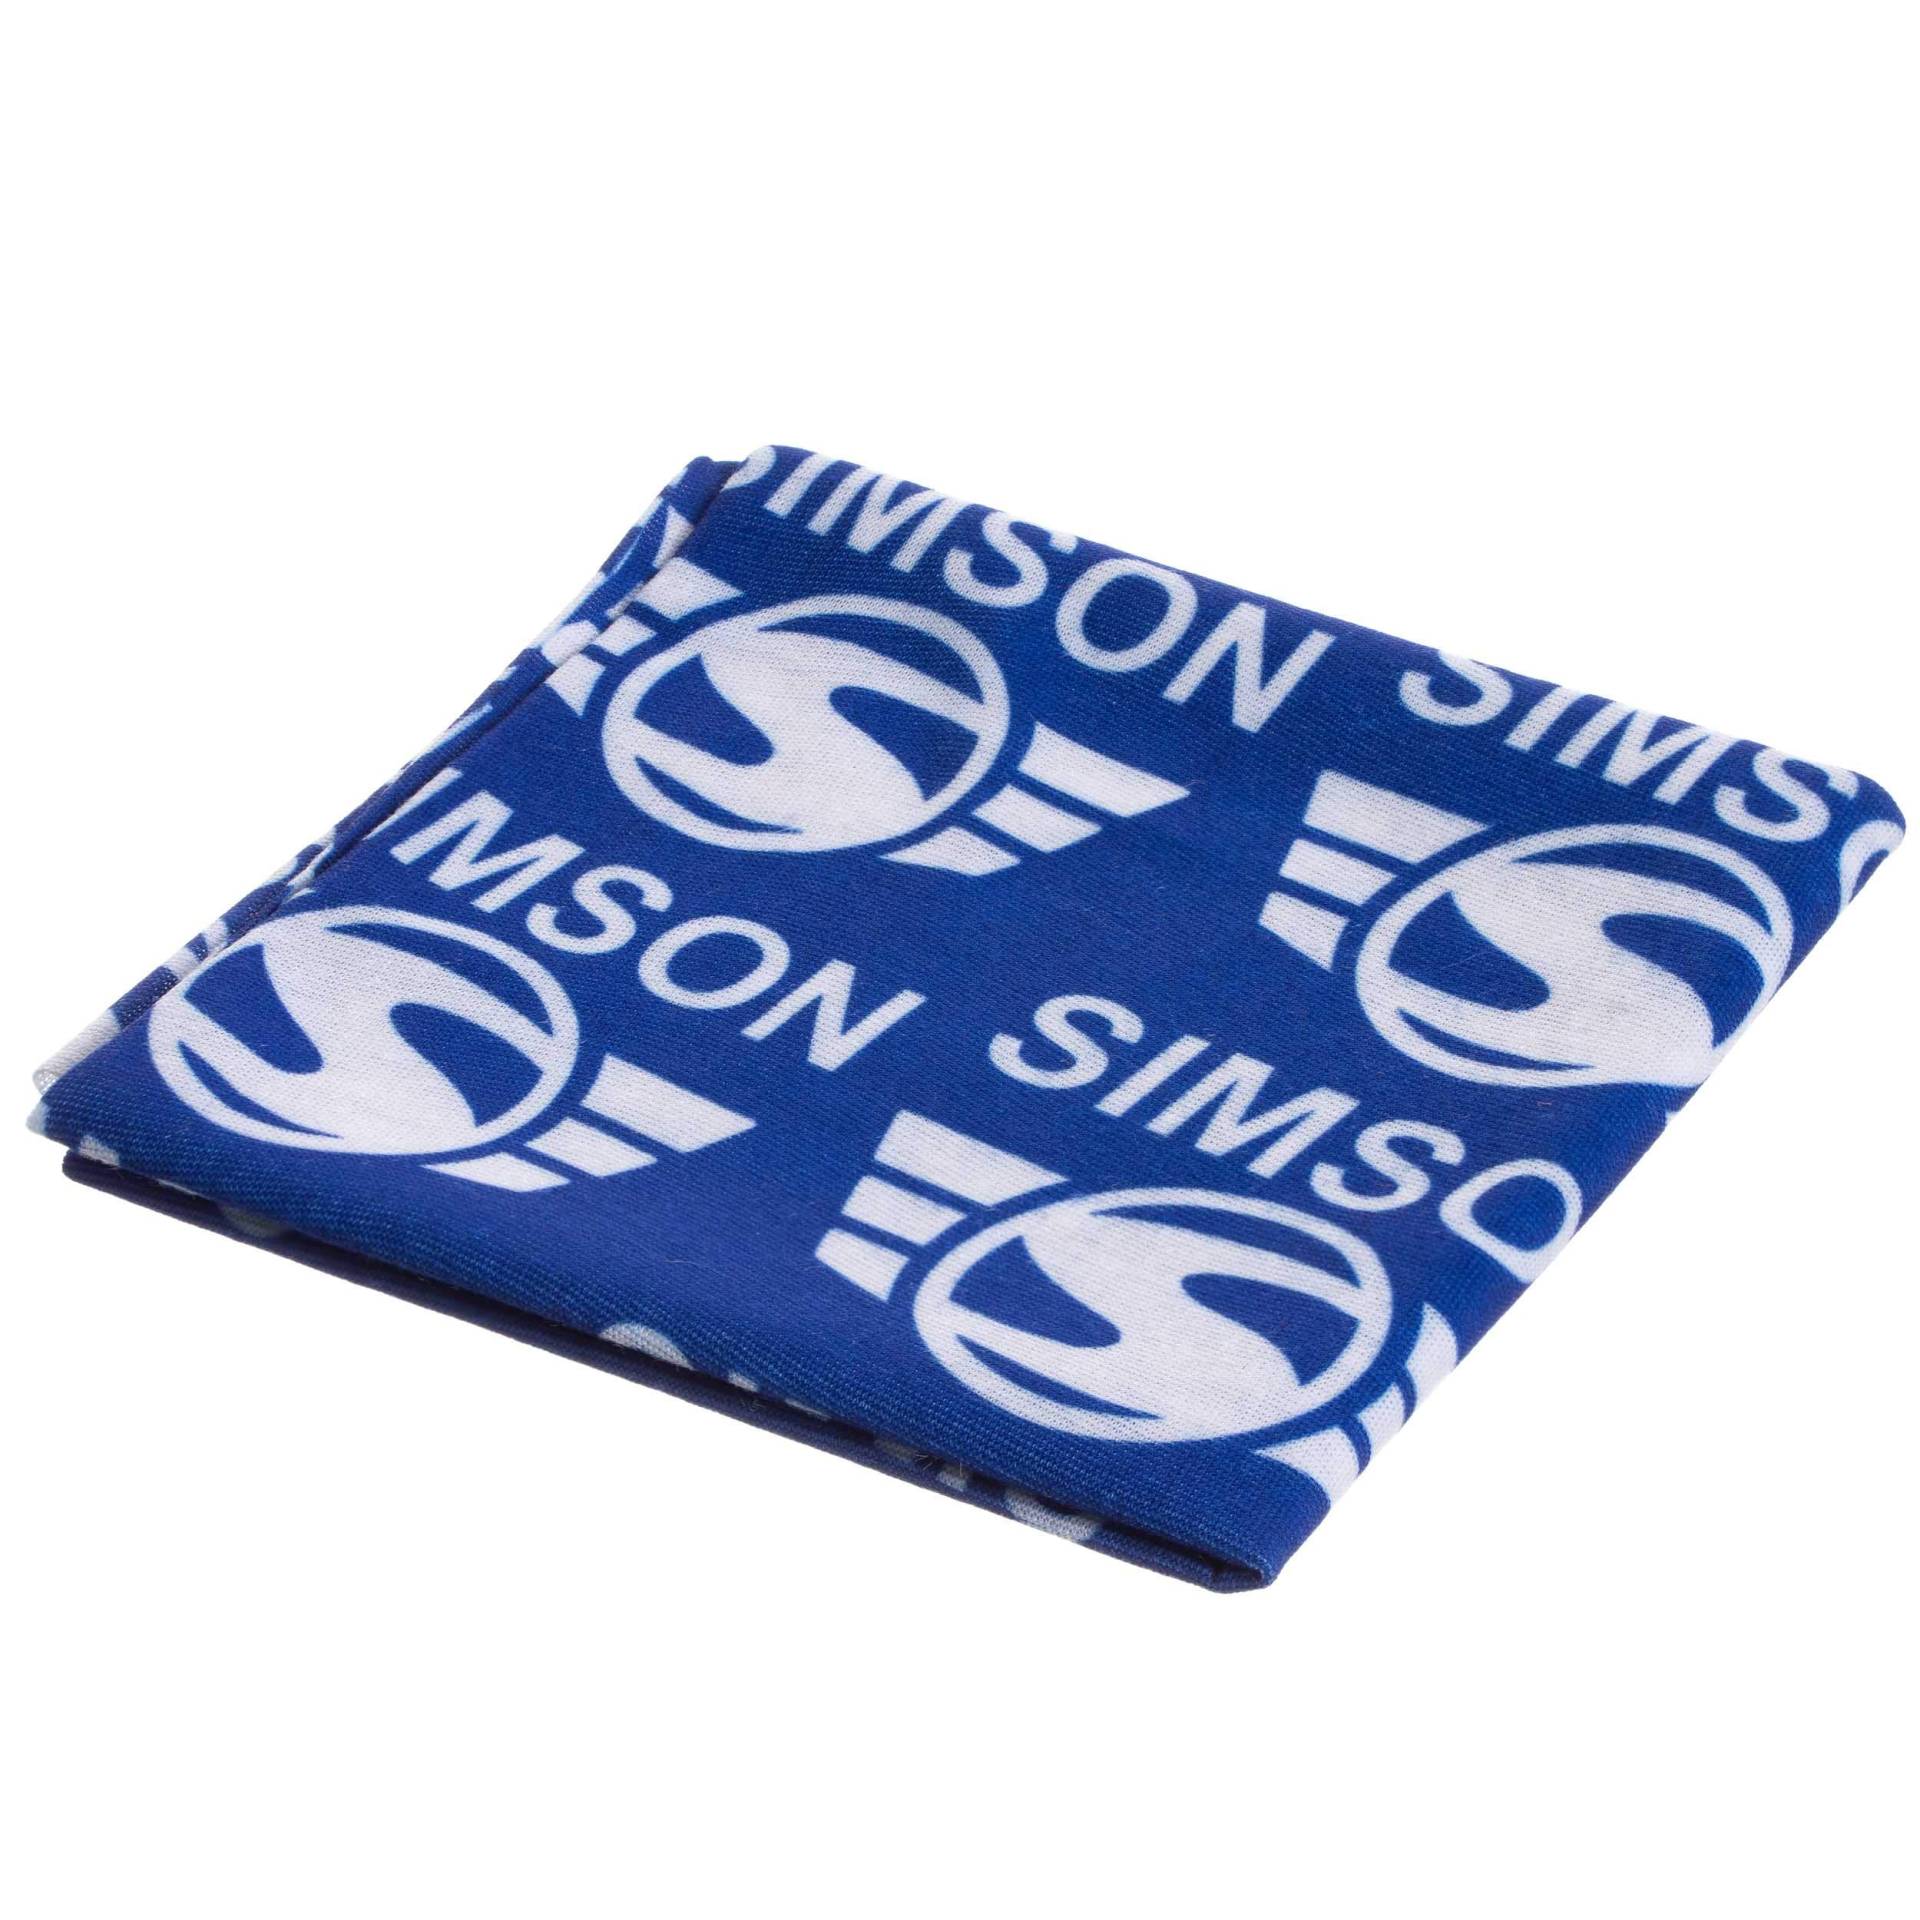 Schlauchtuch, Multifunktionstuch, Halstuch im Polybeutel - Motiv: Markenlogo - Aufdruck weiÃŸ, Hintergrund blau von MZA